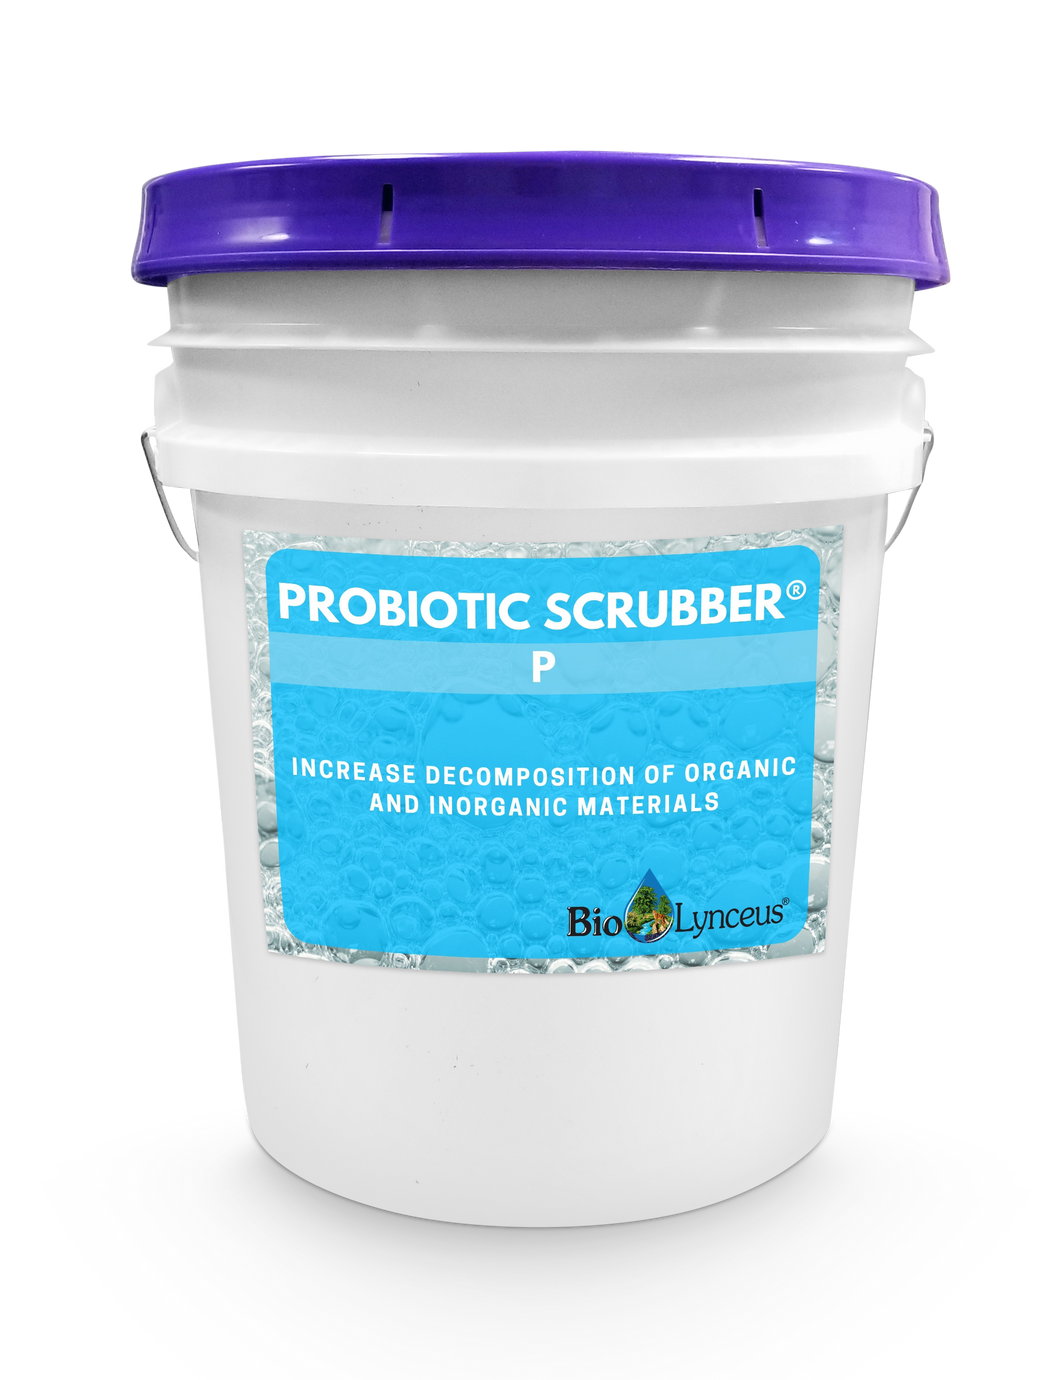 Probiotic Scrubber P